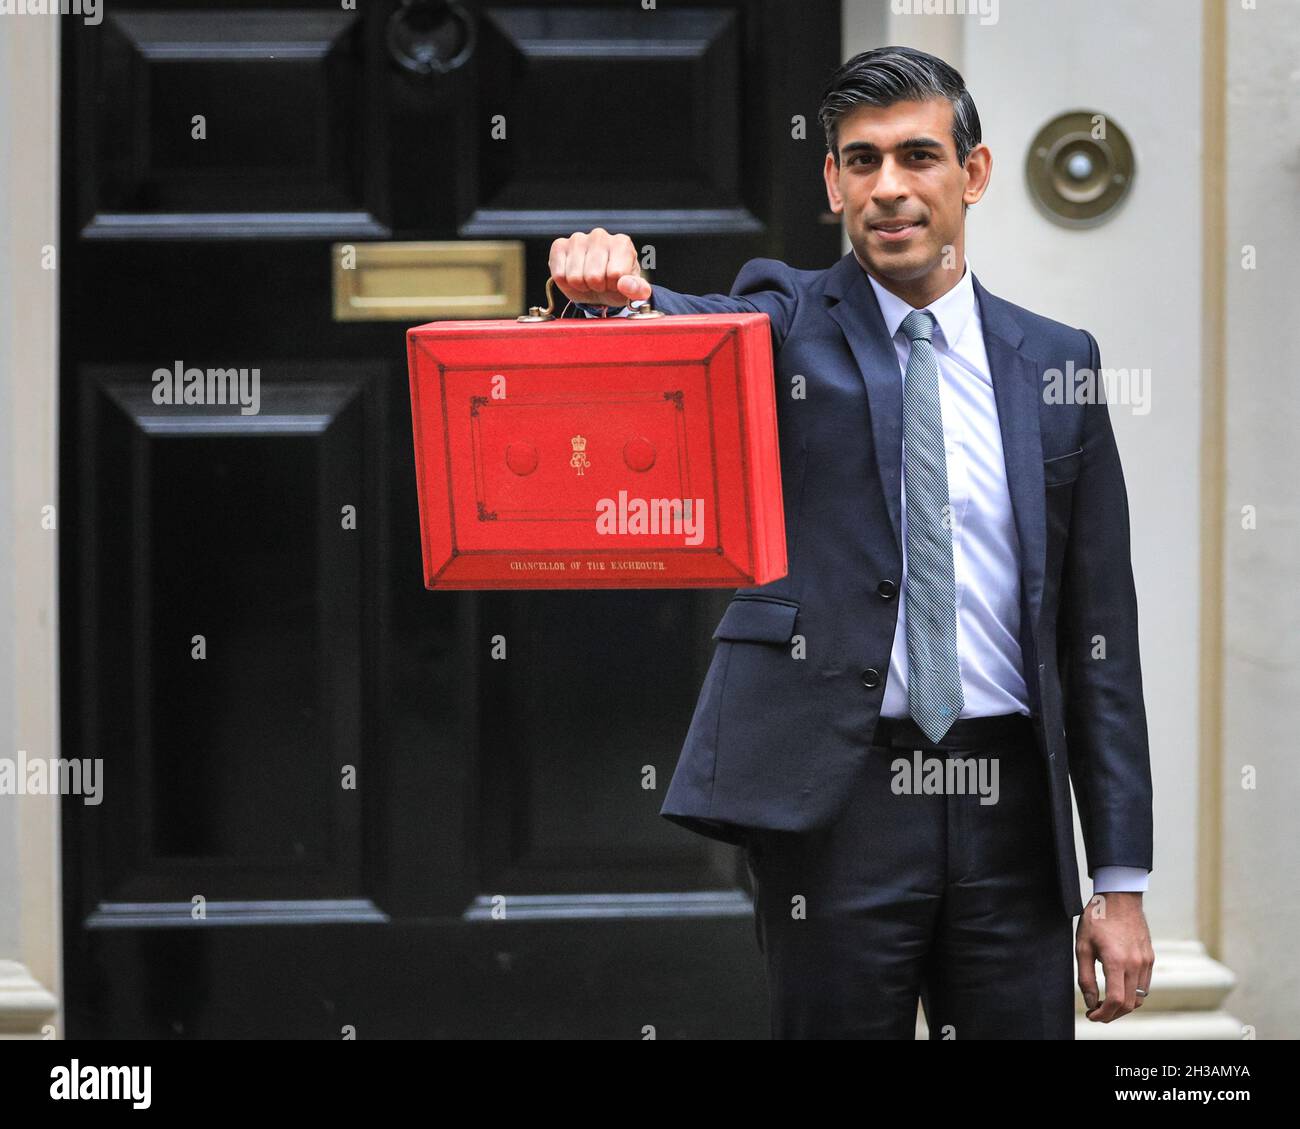 Westminster, Londres, Reino Unido, 27th de octubre de 2021. Rishi Sunak, Canciller de la Hacienda, posa fuera de 11 Downing Street con la icónica caja roja en el Día del Presupuesto. Crédito: Imageplotter/Alamy Live News Foto de stock